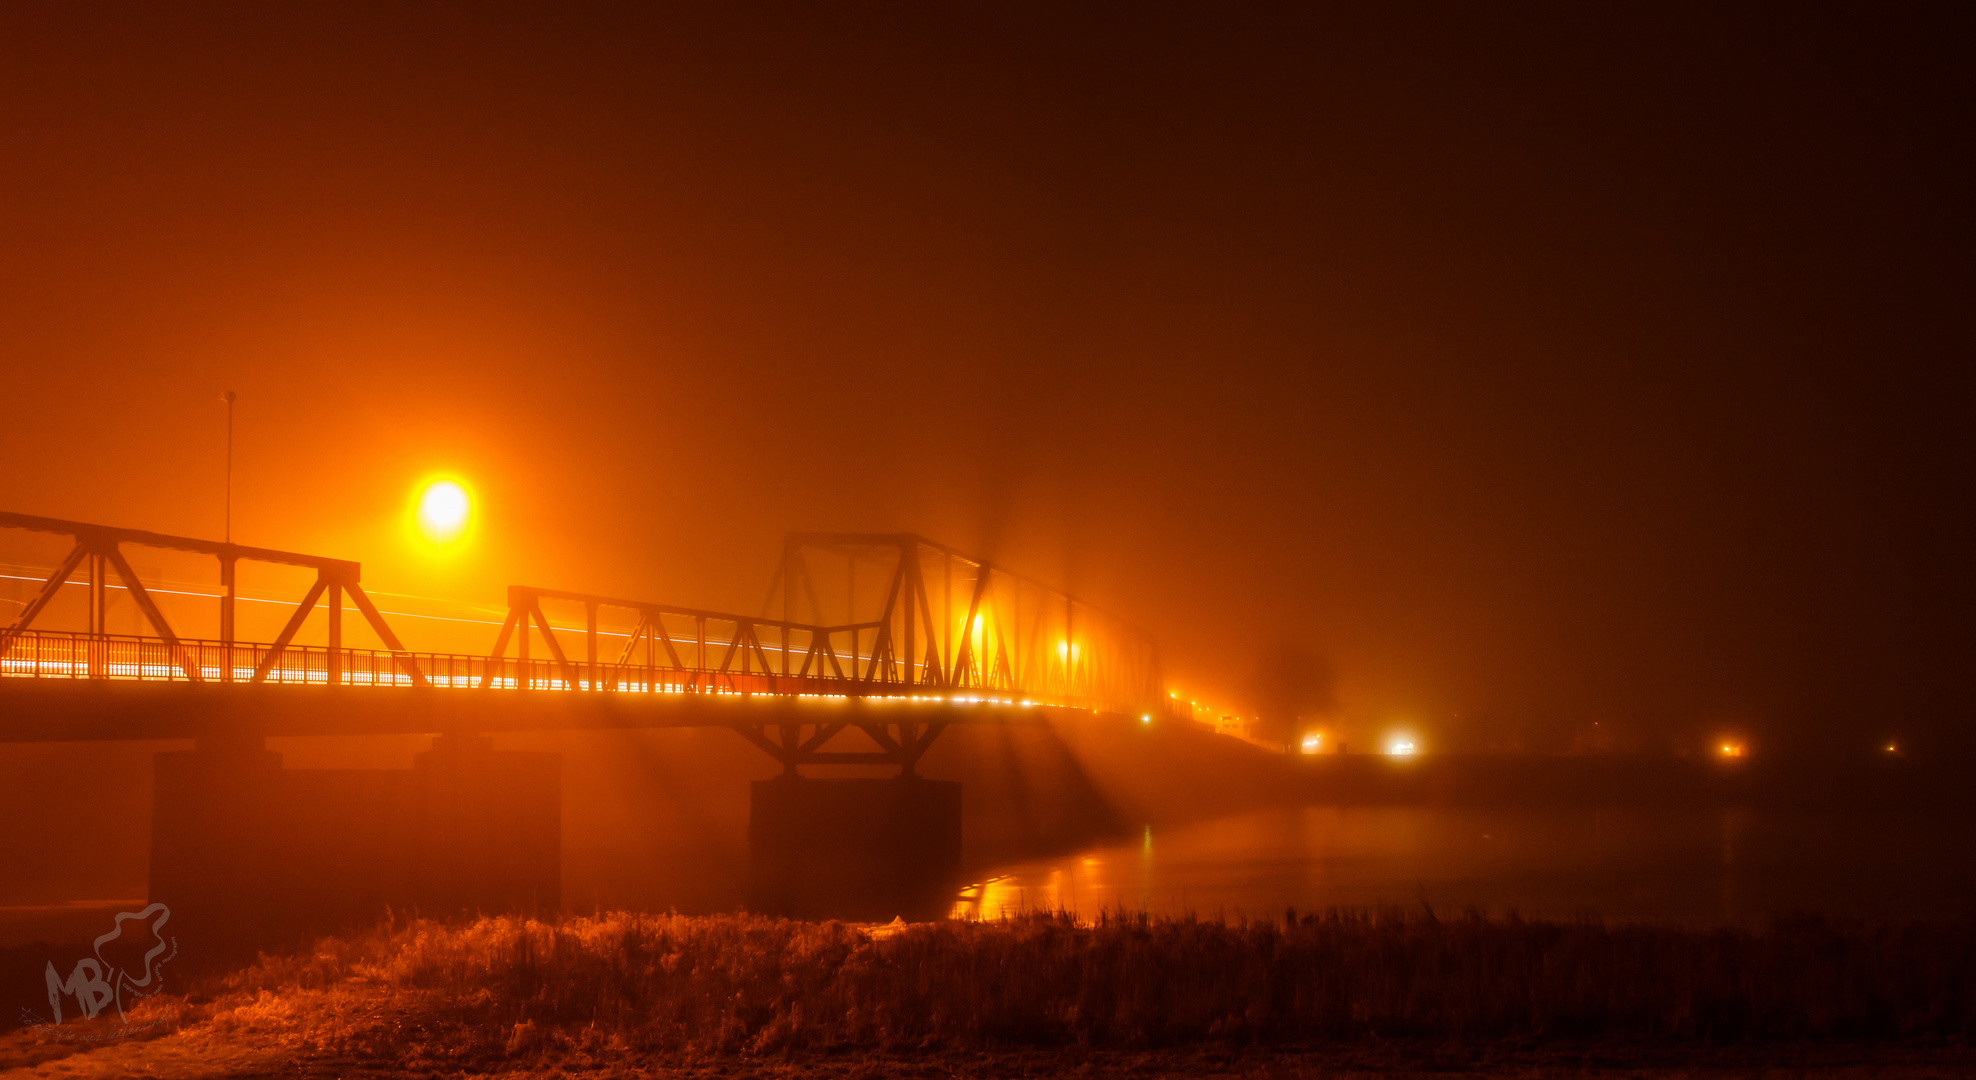 Grenzbrücke Deutschland/Polen im Nebel